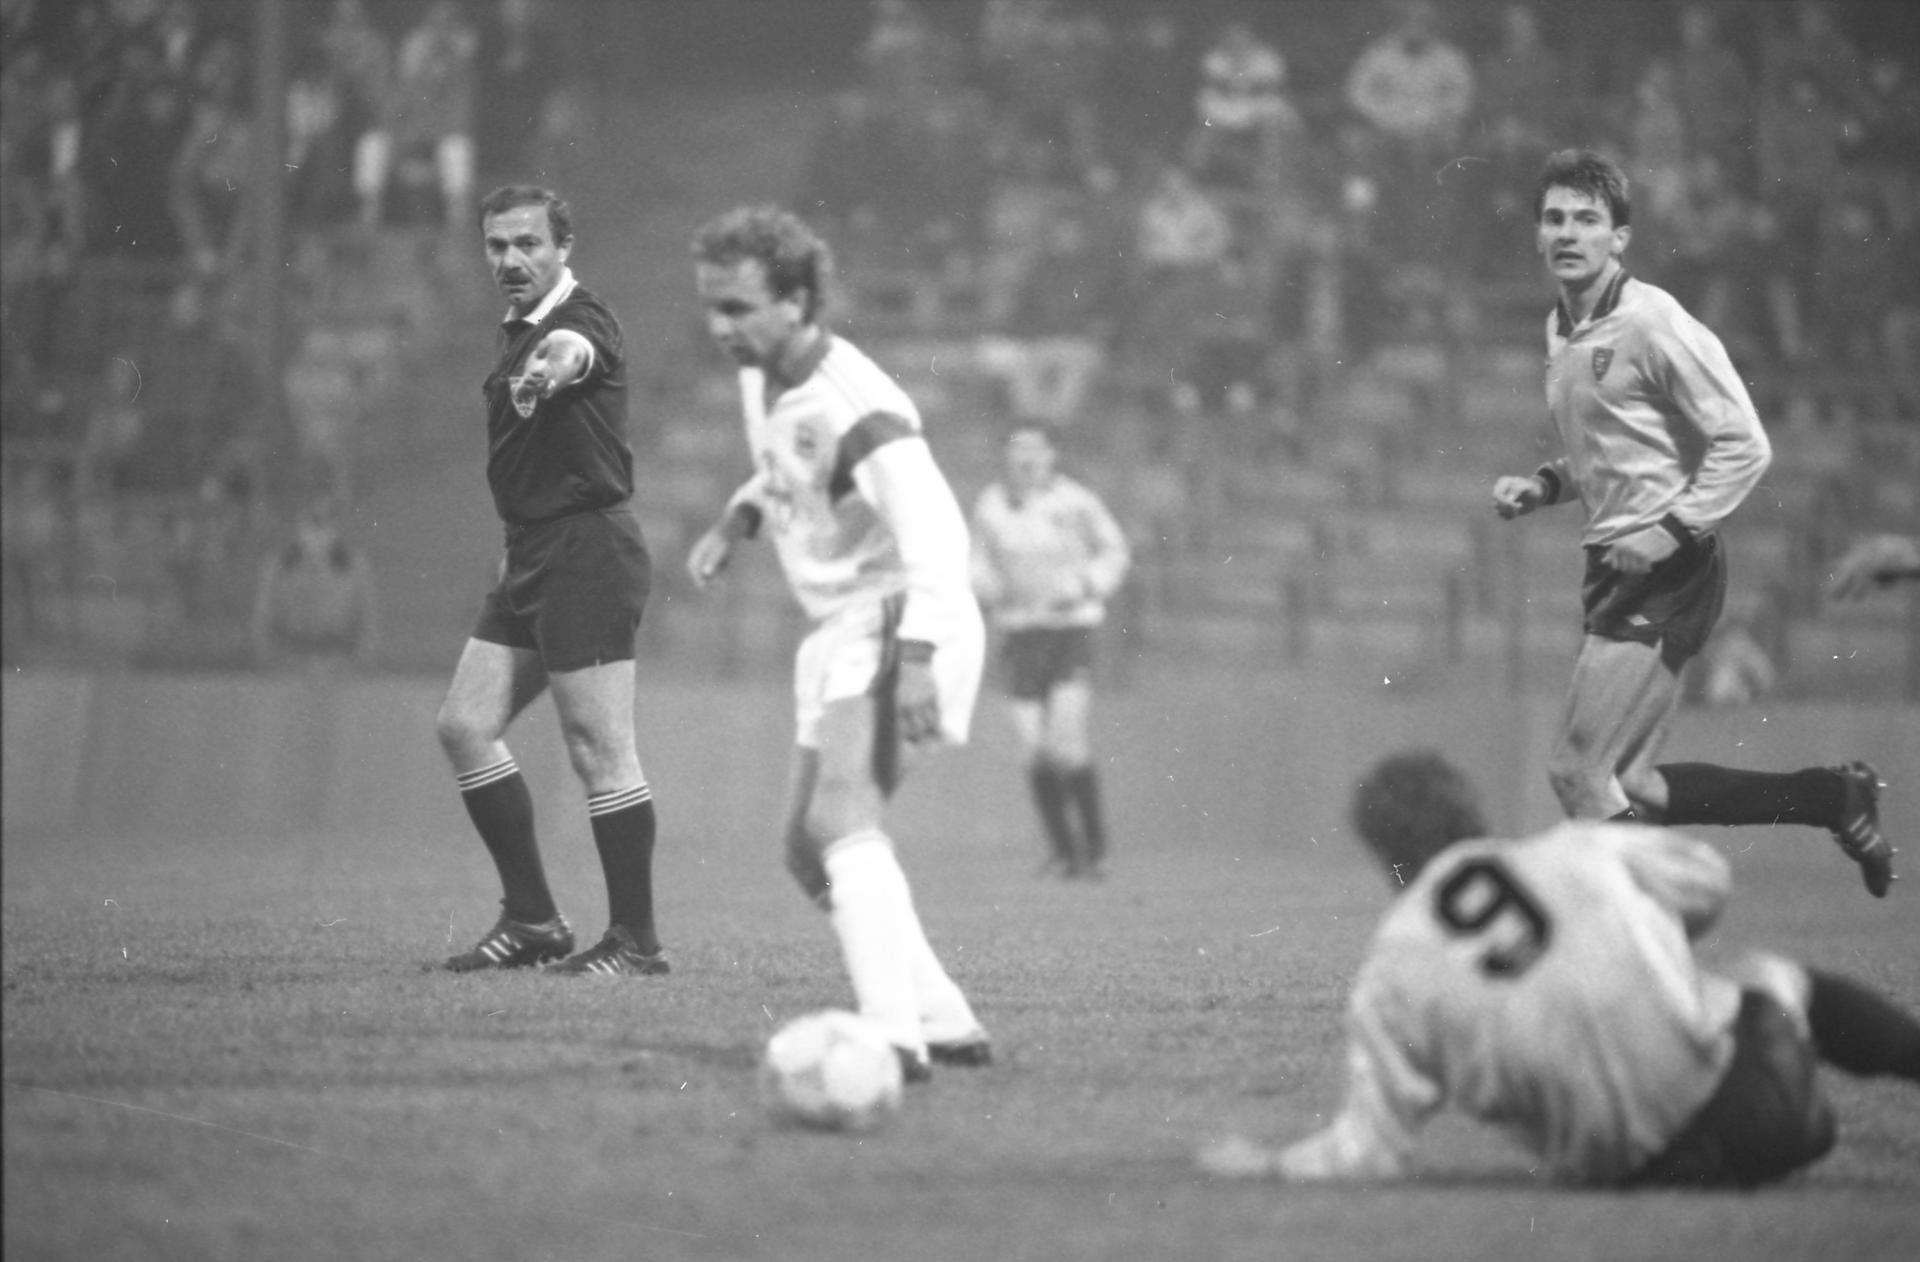 GKS Katowice - Bayer 04 Leverkusen 1:2 (24.10.1990)